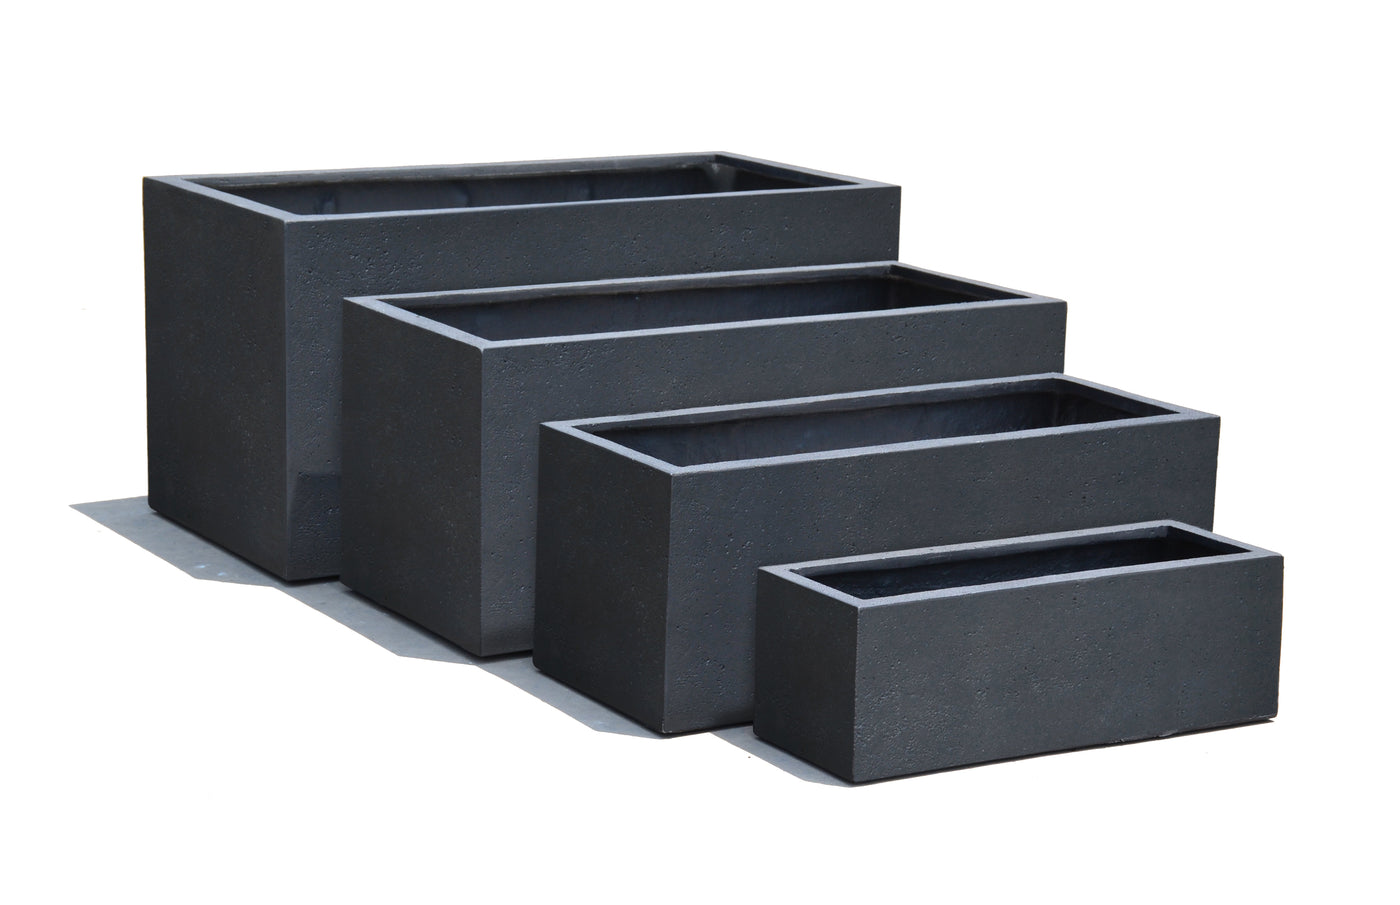 Box Concrete Surface Charcoal